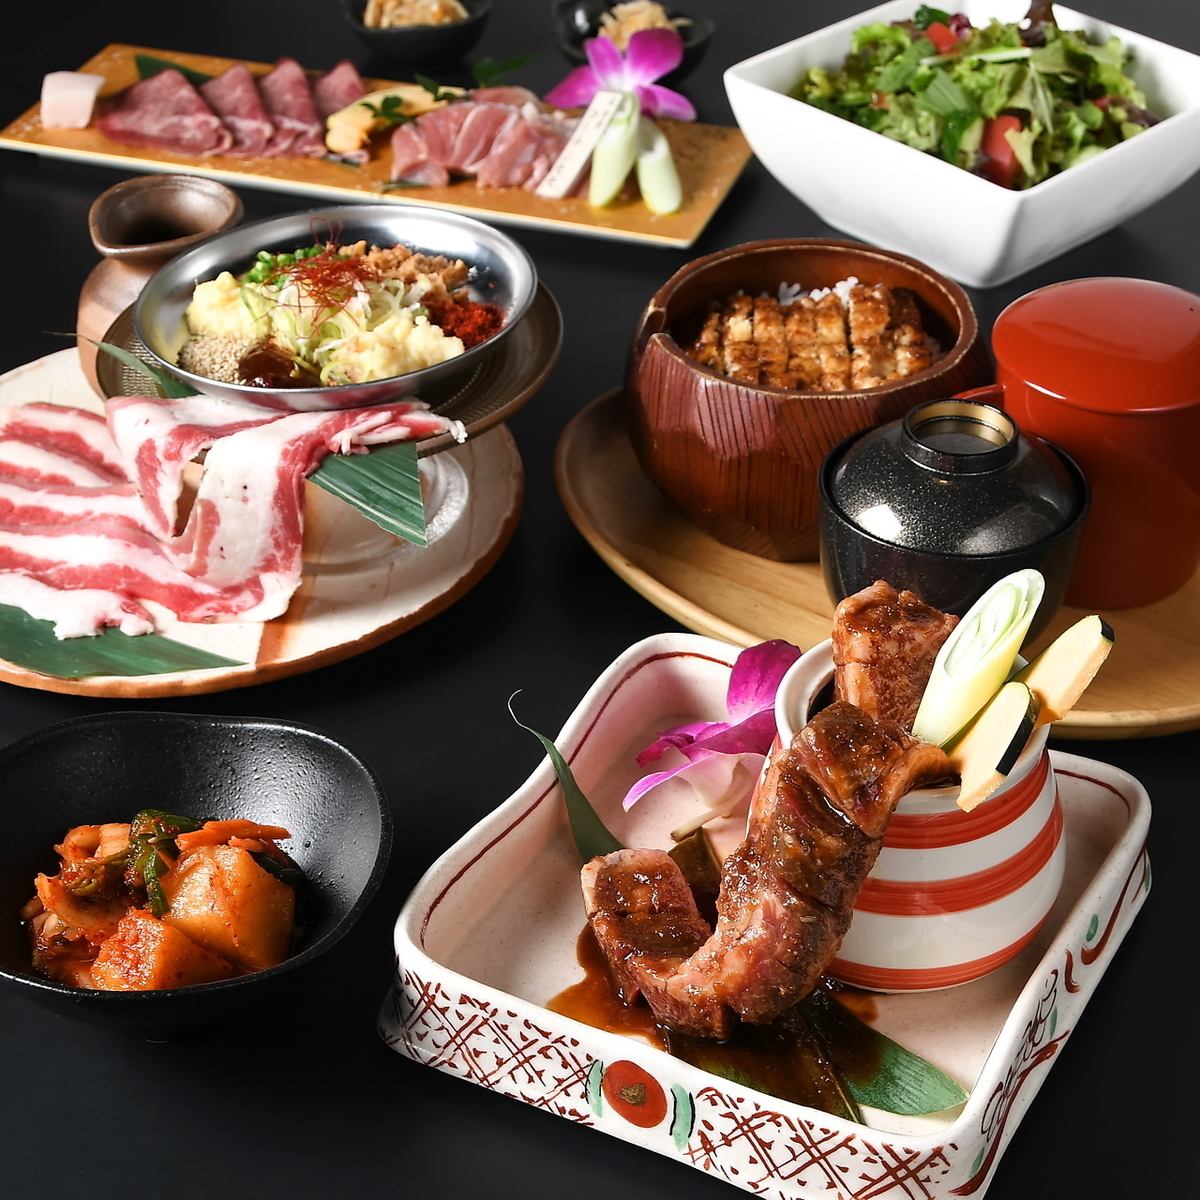 附無限暢飲♪ 可以超值價格享用三河牛黃金、松阪牛等優質肉品的套餐餐廳。